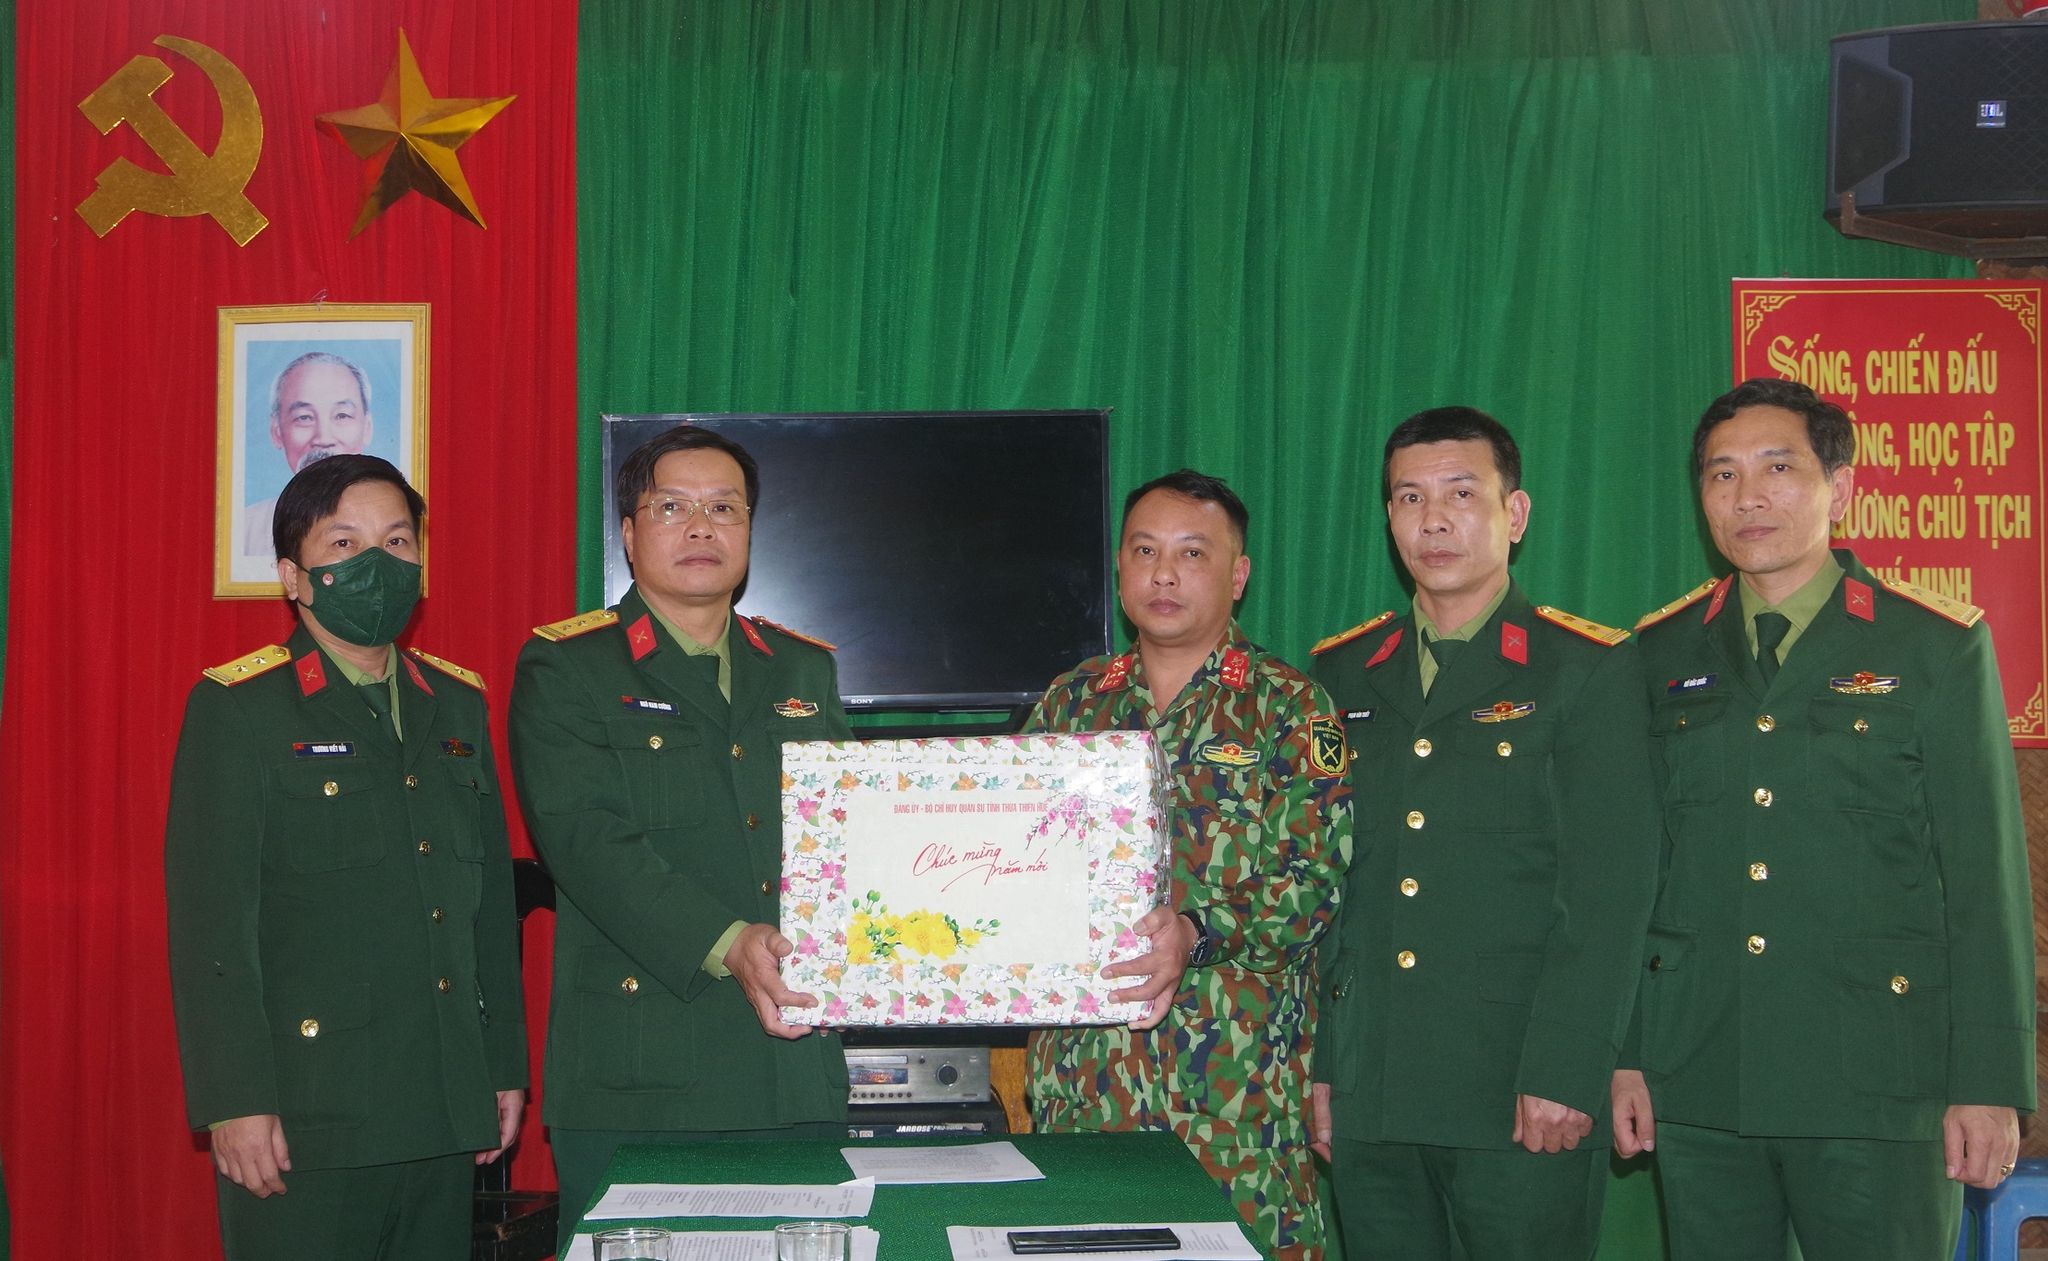 Thượng tá Ngô Nam Cường (thứ 2 bên trái qua), Chỉ huy trưởng tặng quà cán bộ, chiến sĩ Đại đội 17 Công binh, Bộ CHQS tỉnh Thừa Thiên - Huế.